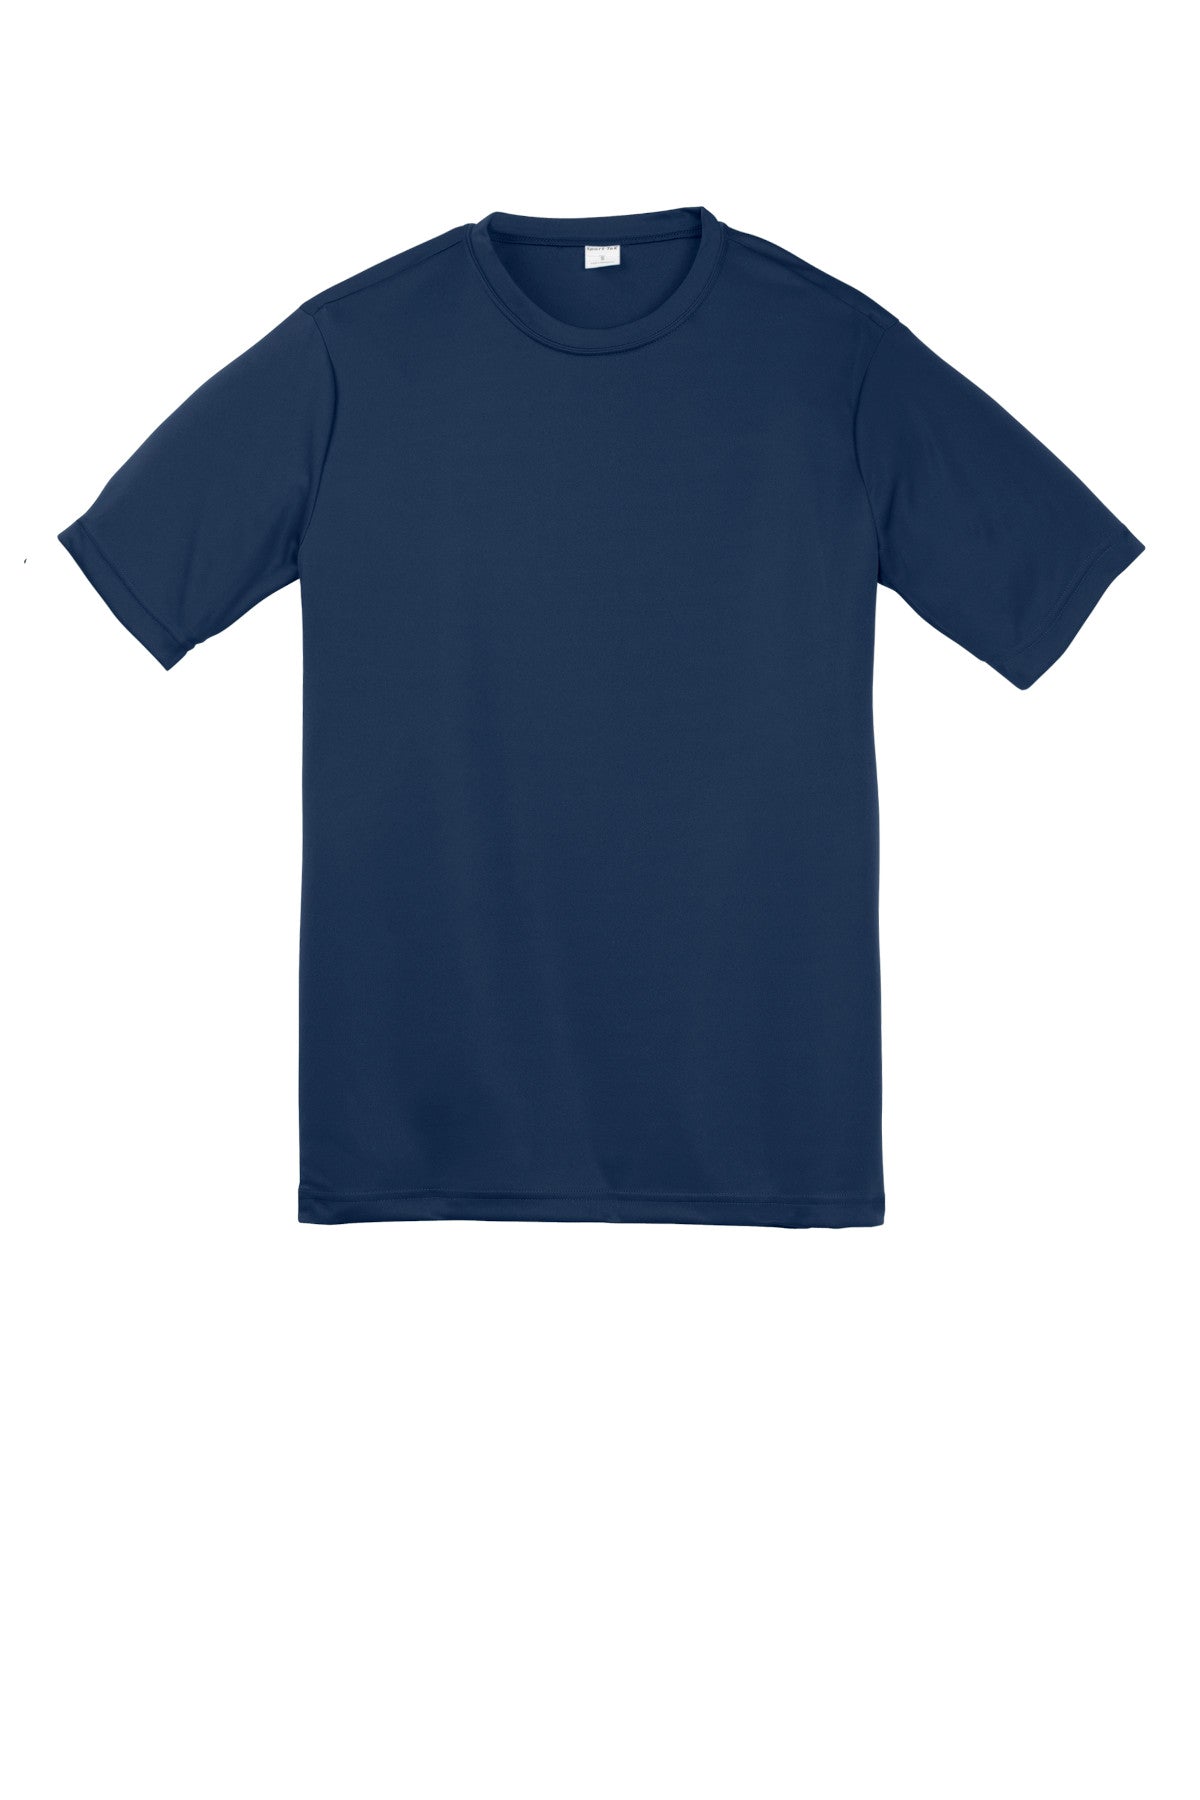 Sport-Tek Yst350 Polyester Youth T-Shirt Yth Small / True Navy